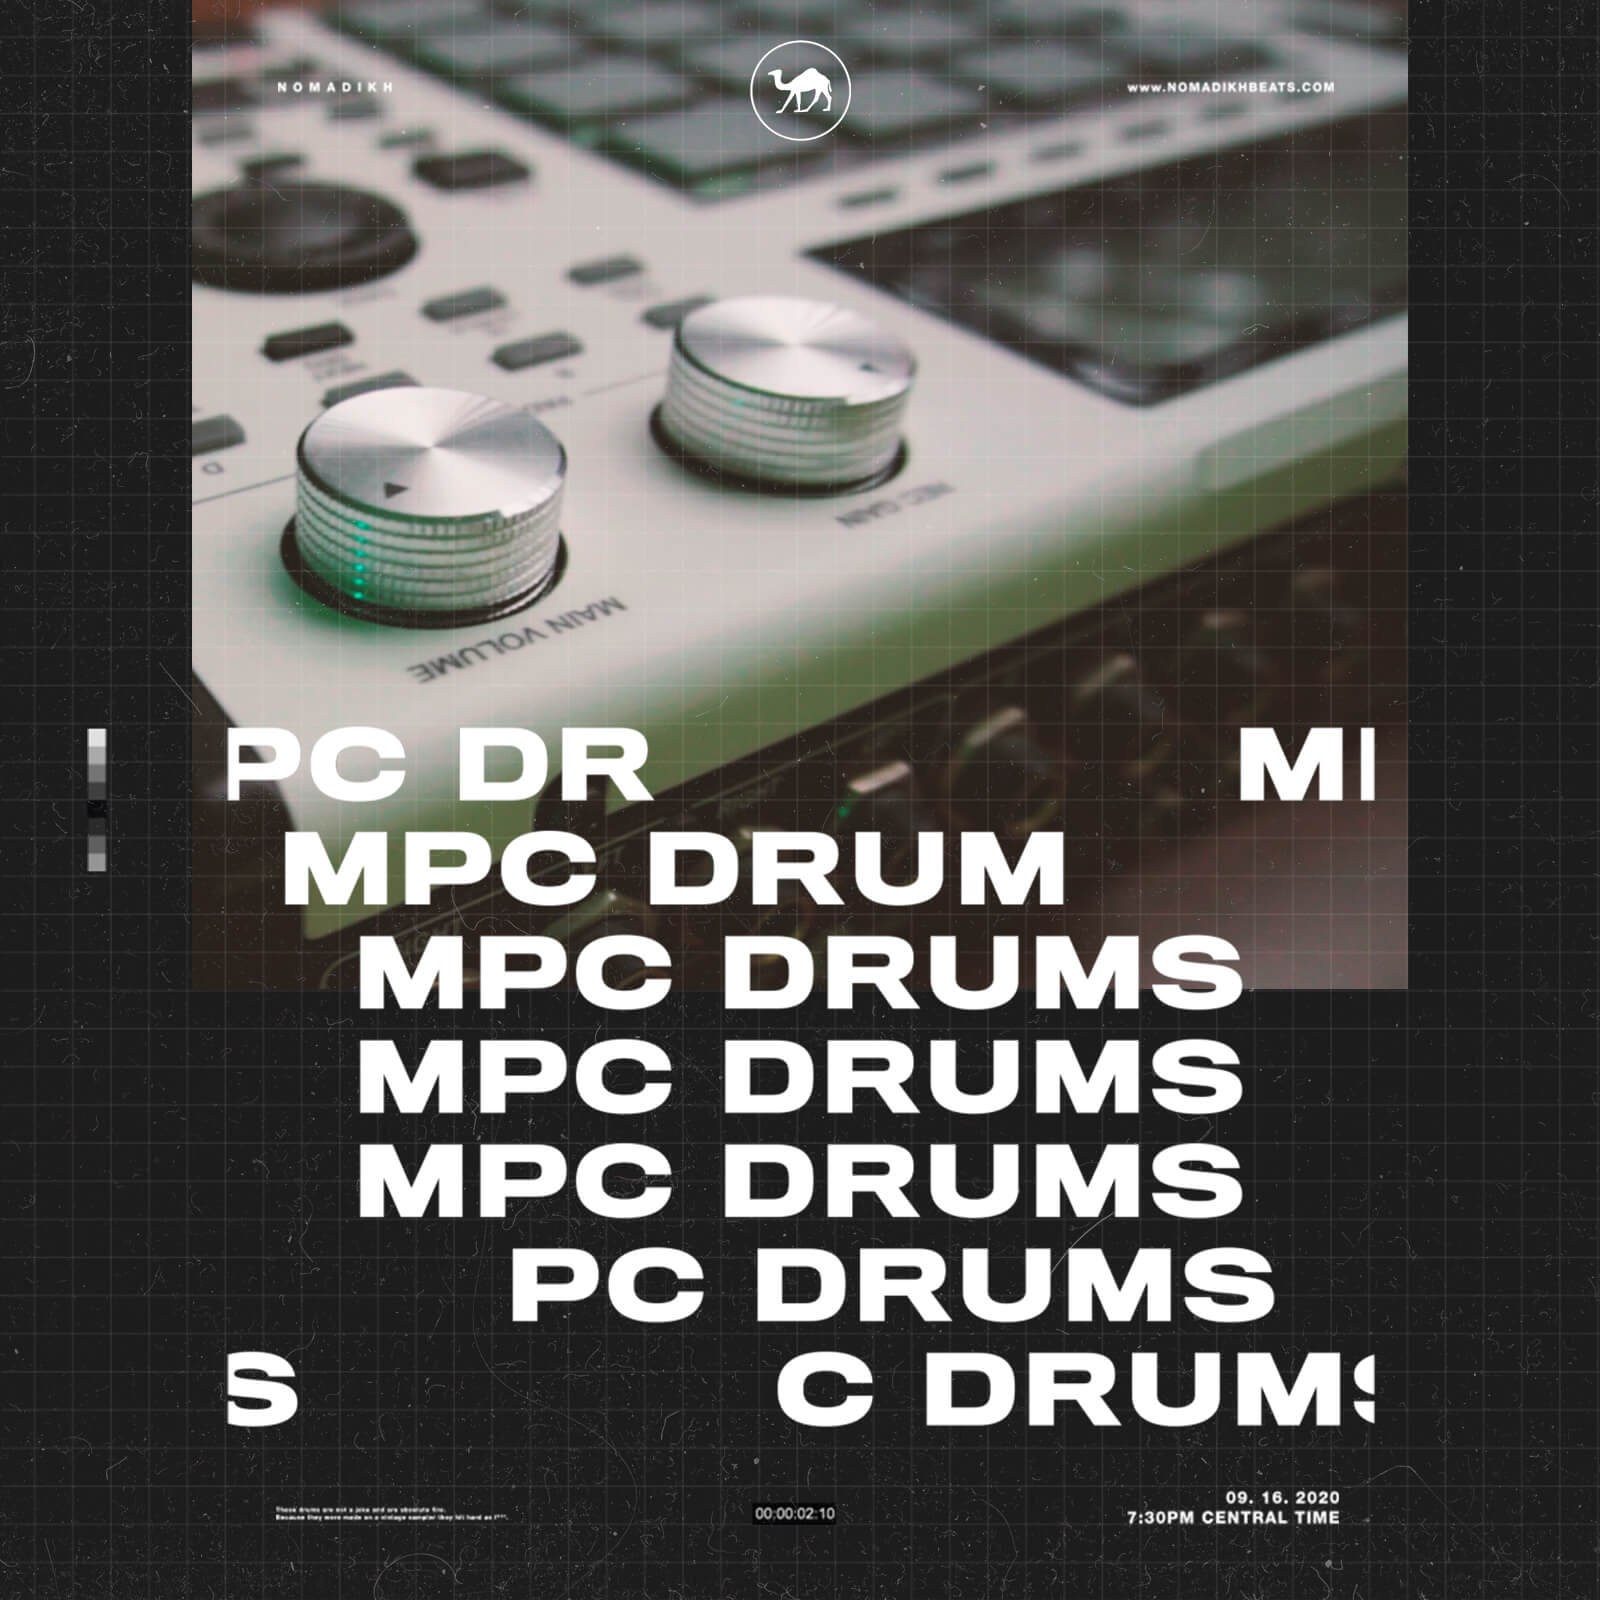 16 bit drum kit fl studio